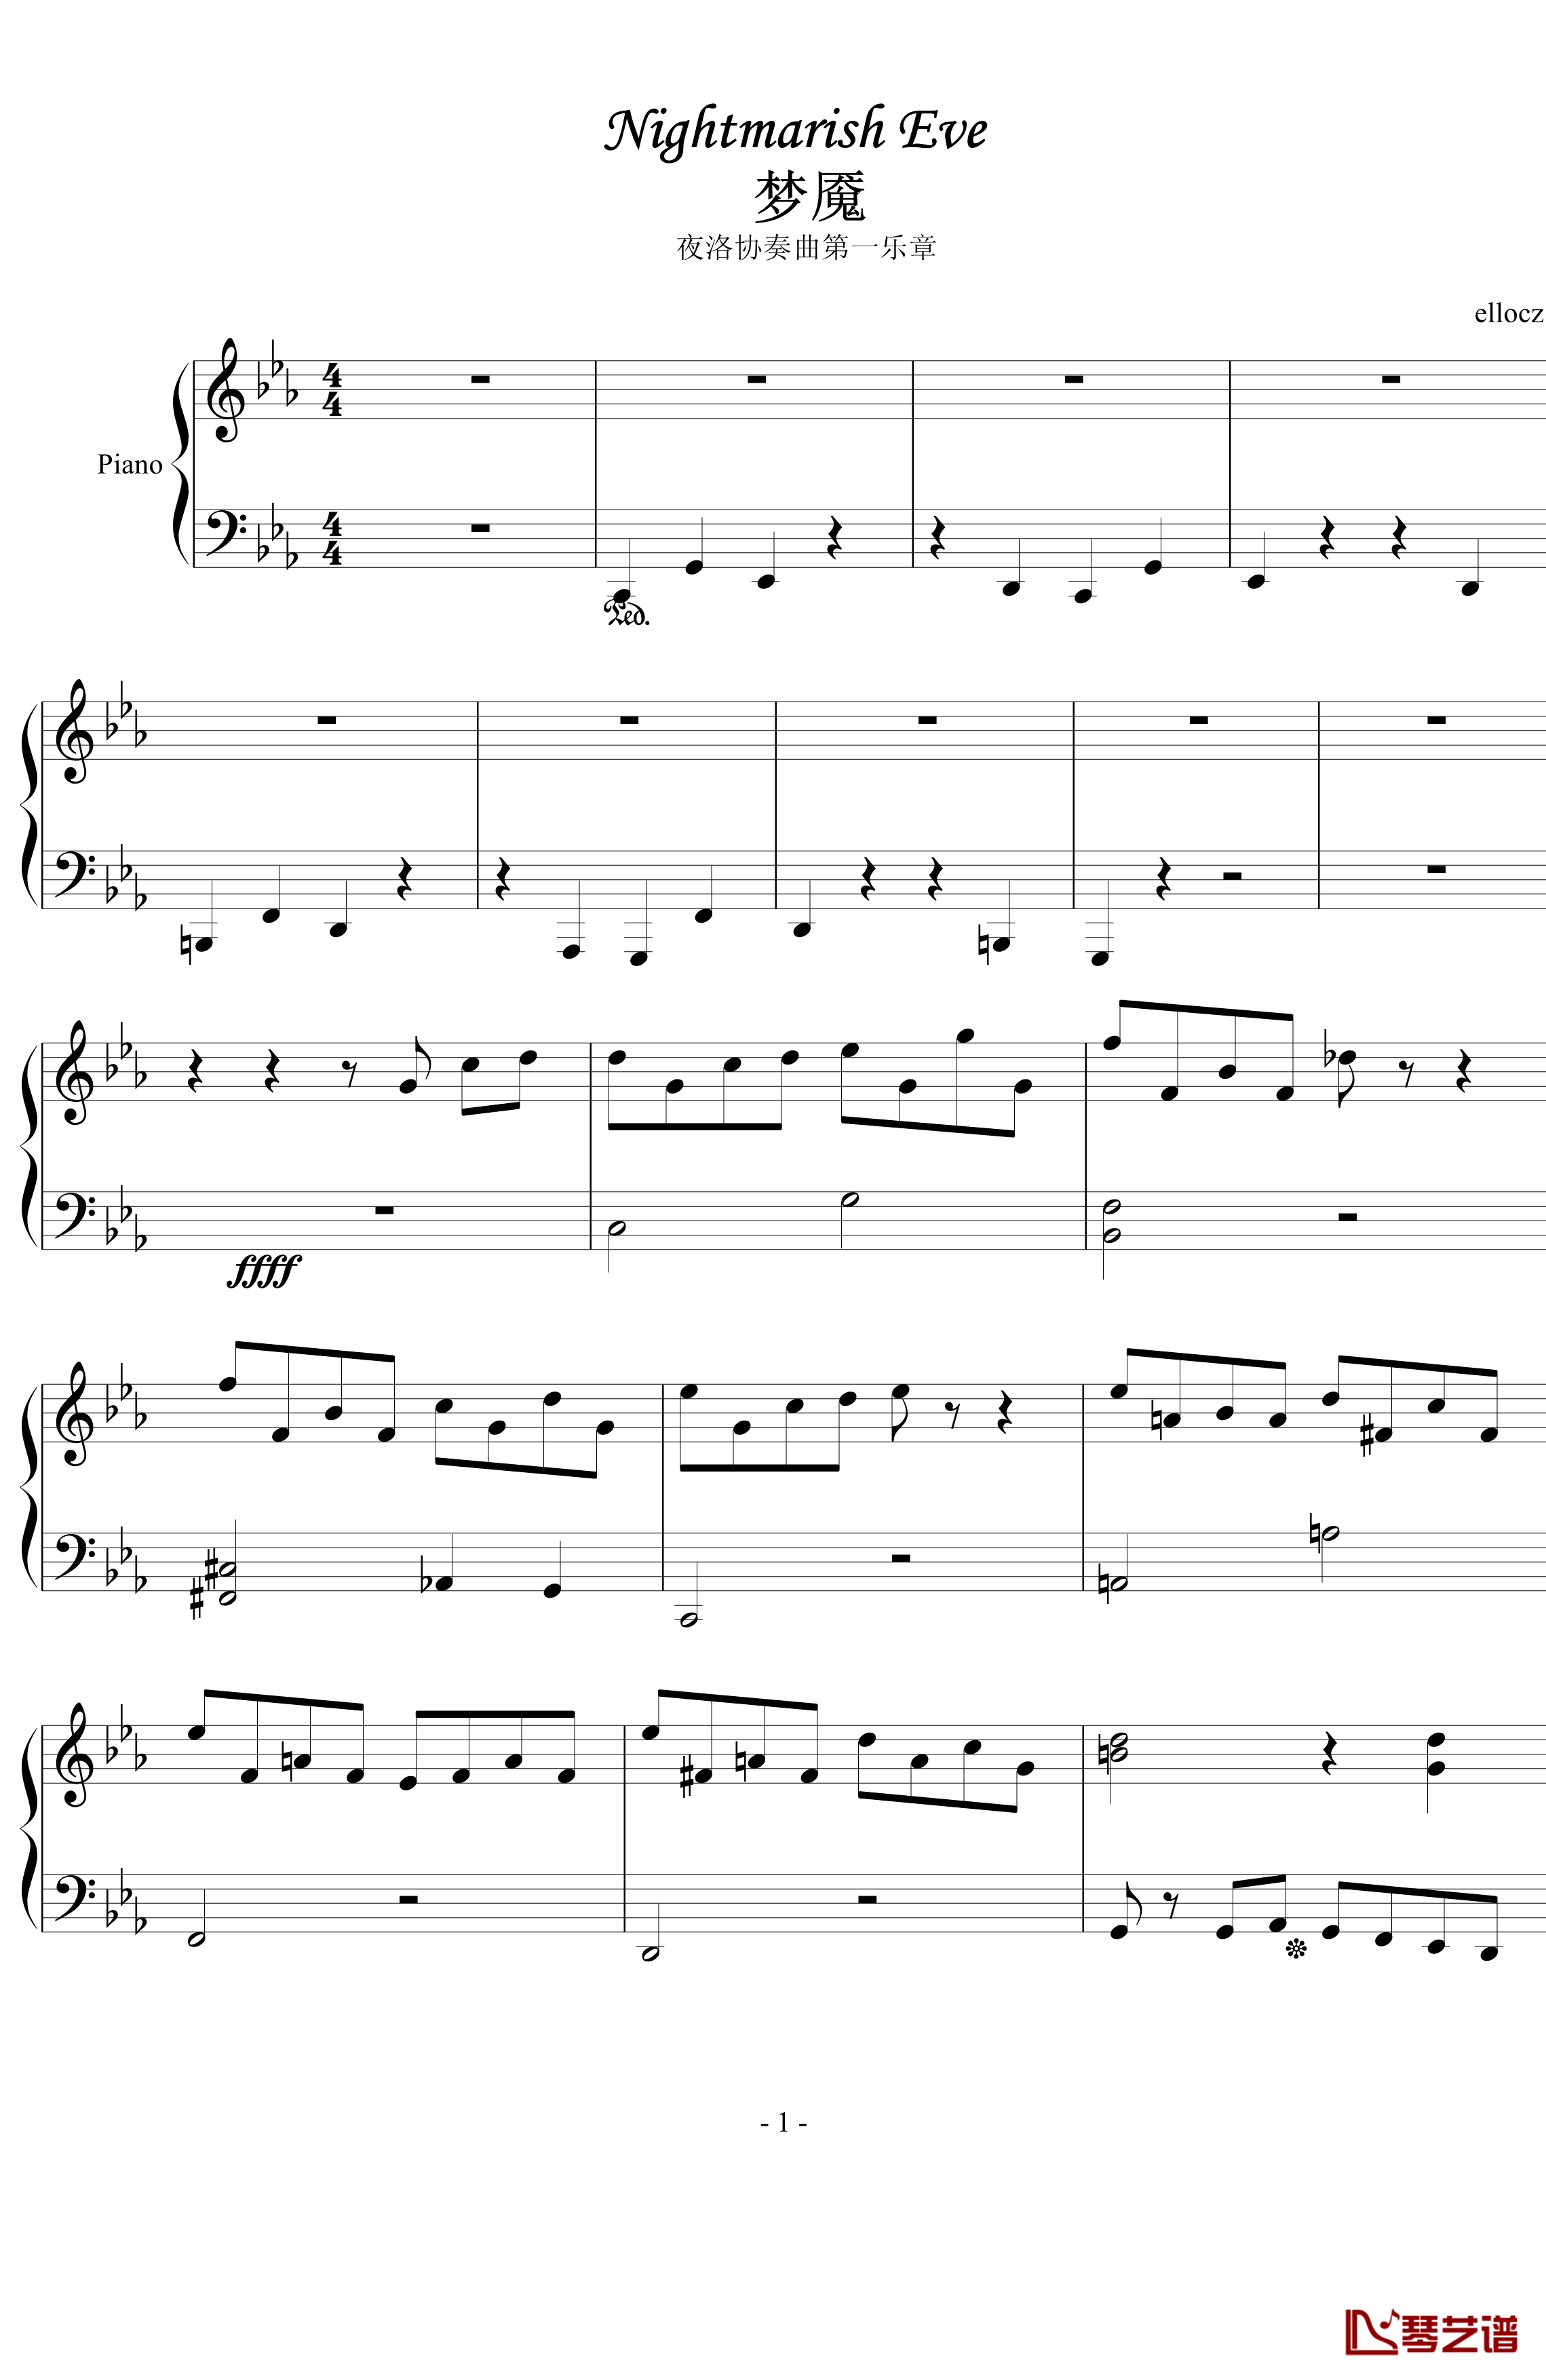 夜洛第一番协奏曲梦魇钢琴谱-ellocz1